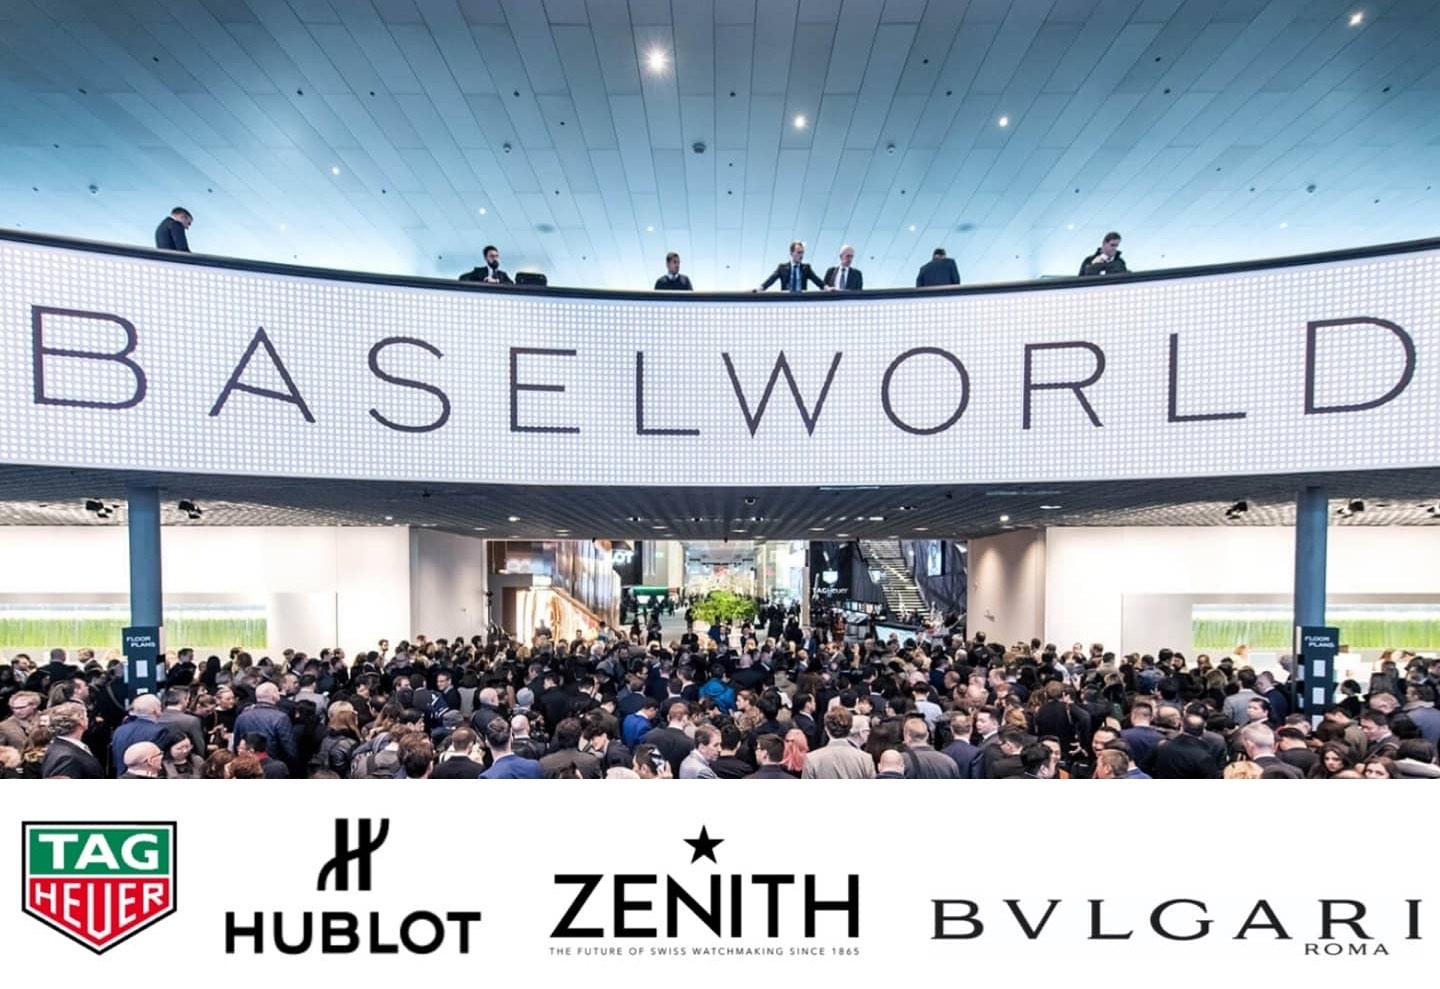 Các thương hiệu của LVMH - Hublot, TAG Heuer, Zenith và Bulgari thông báo rút khỏi Baselworld